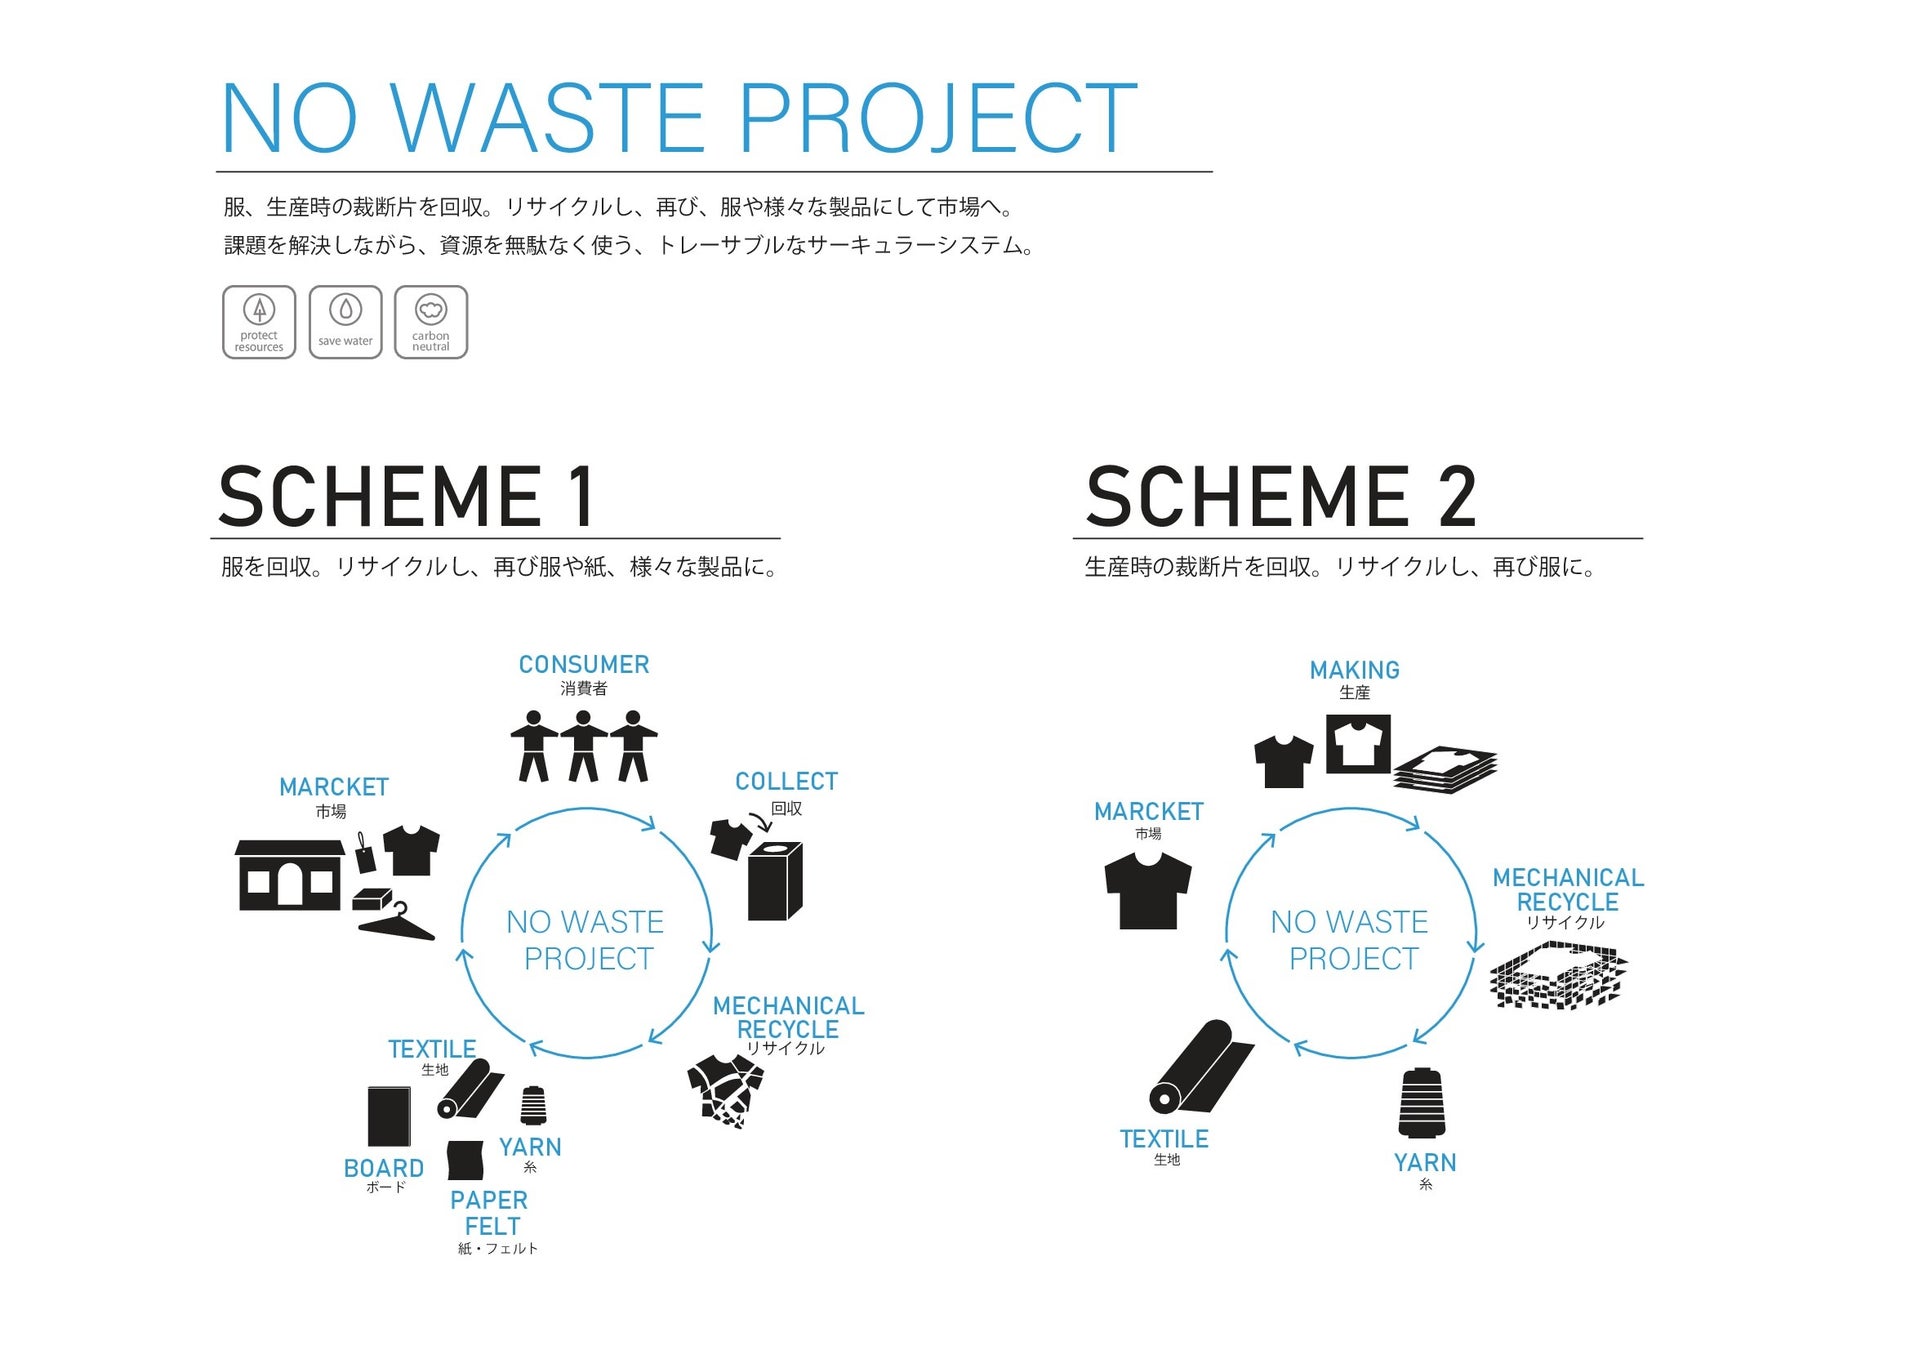 社会の課題解決のためのソリューションを提案する　サステナブルサイト「TAKIHYO FOR GOOD」を開設のサブ画像4